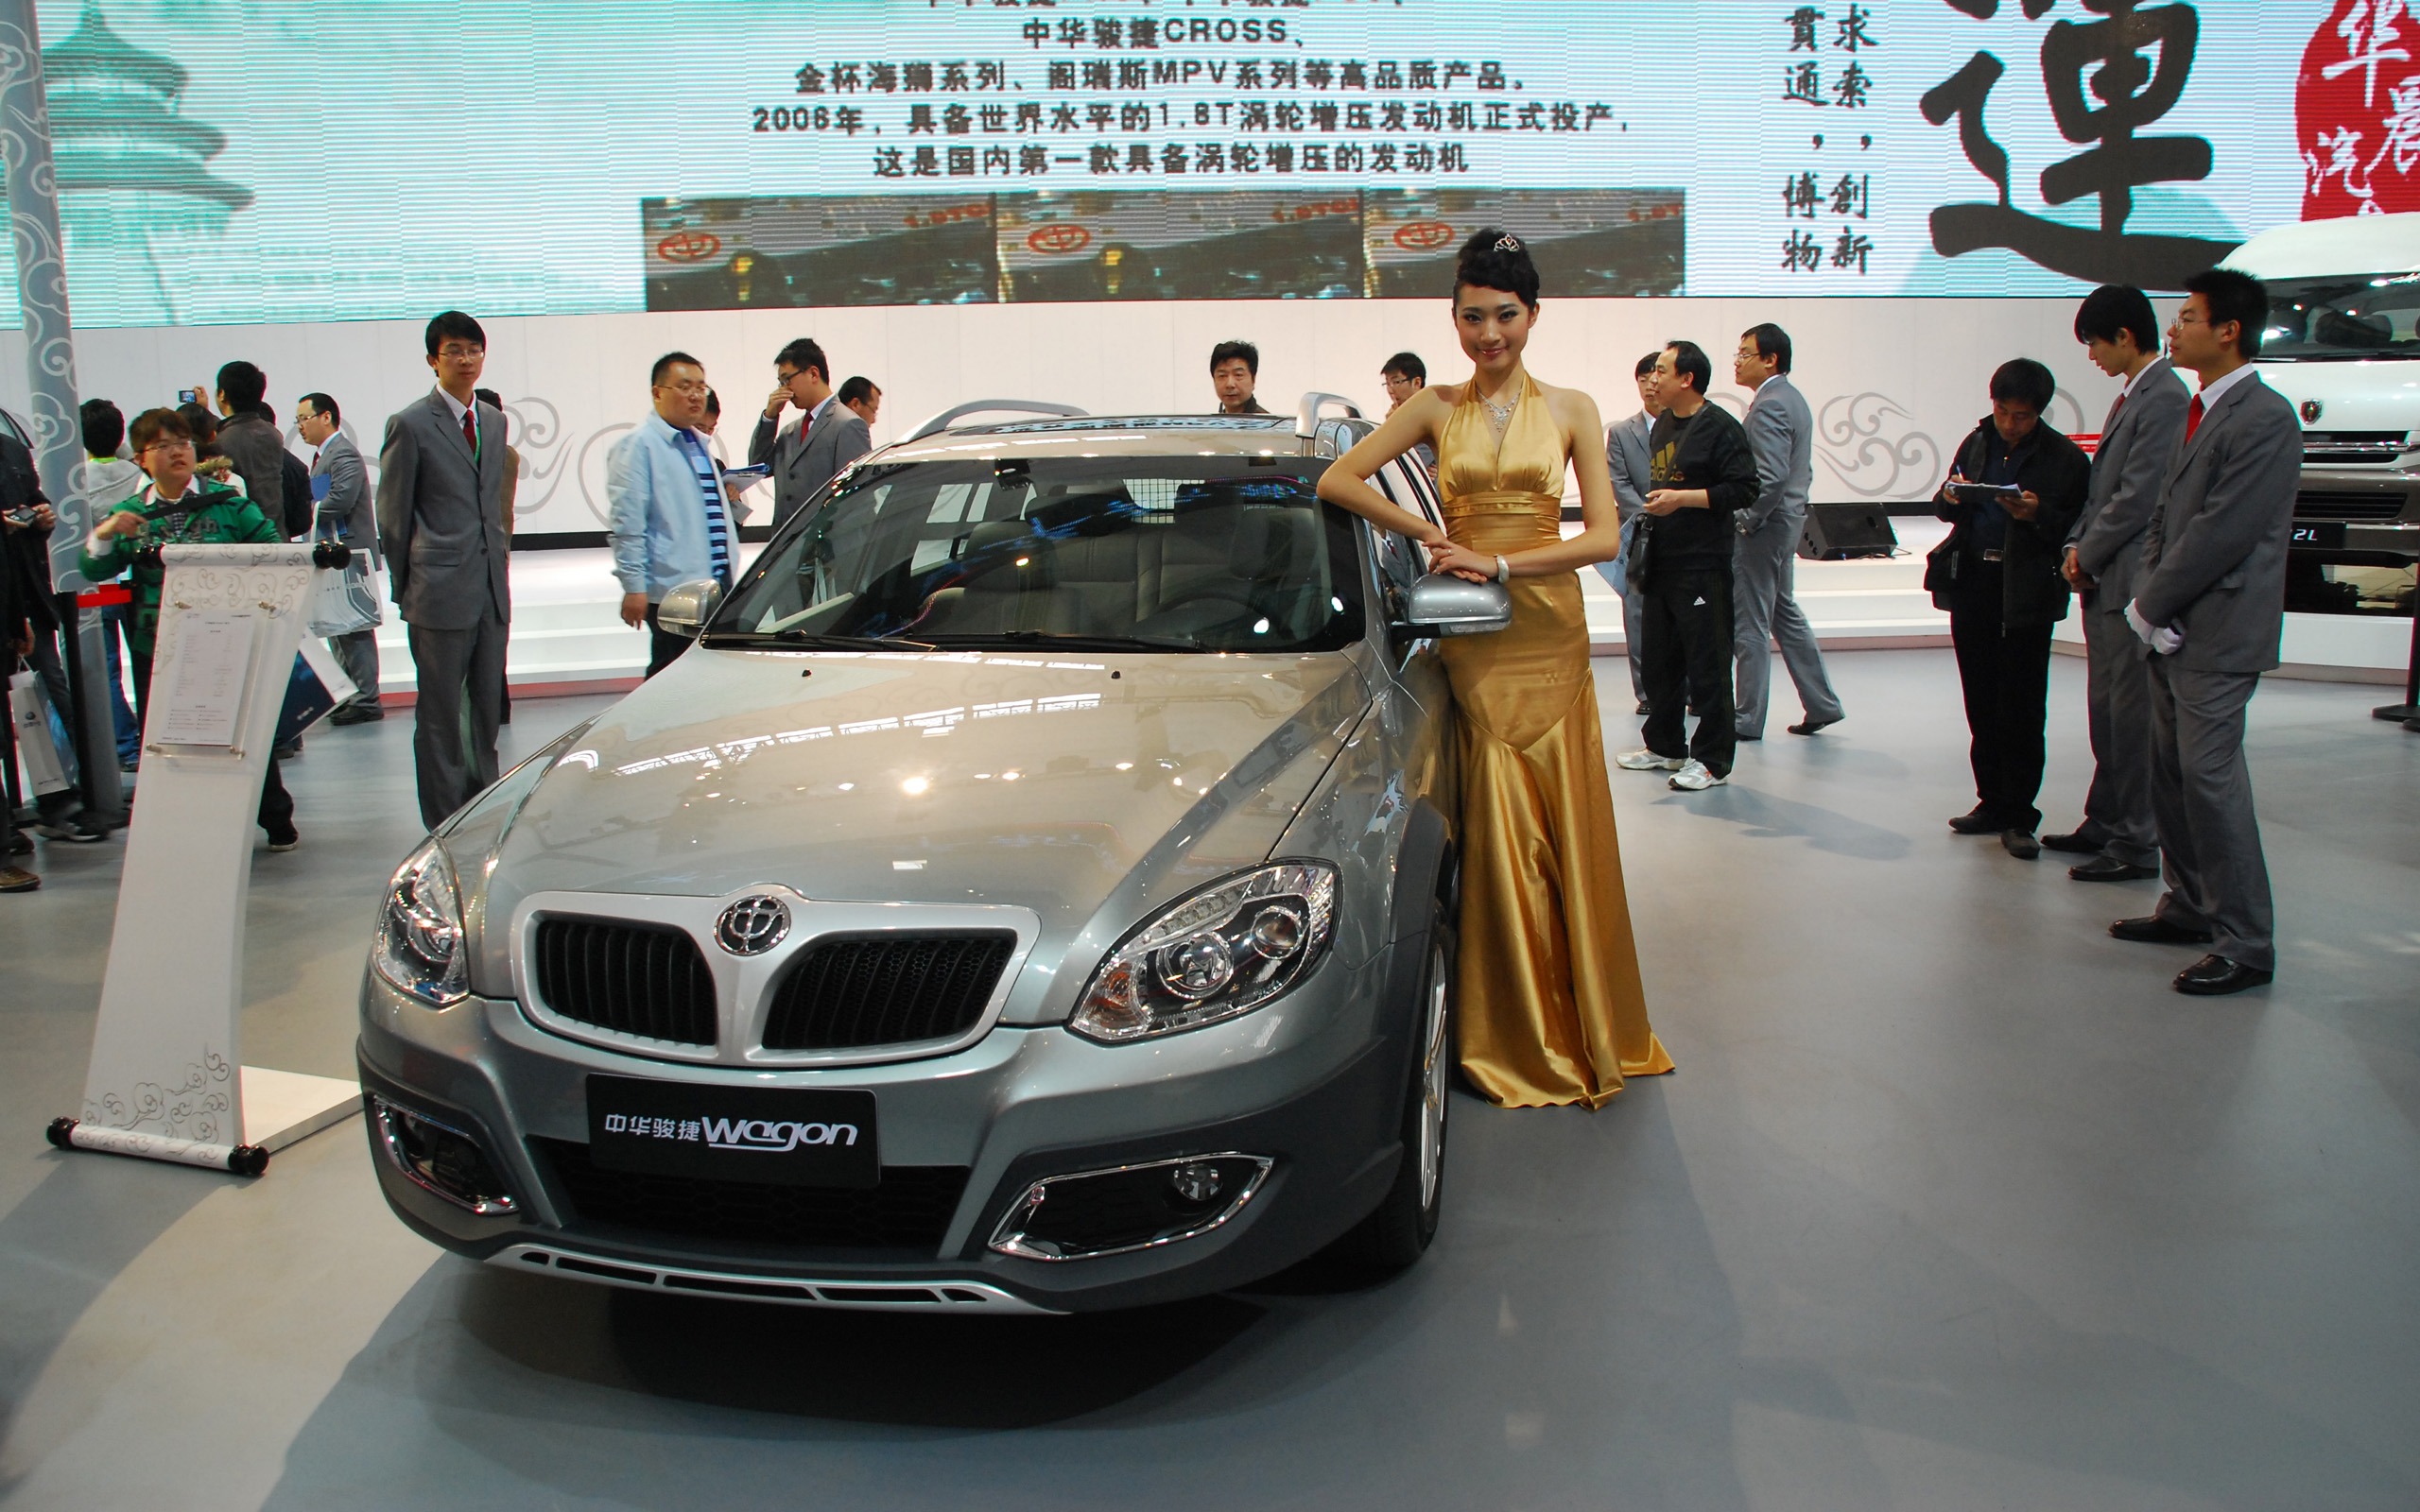 2010 Beijing International Auto Show (1) (z321x123 works) #18 - 2560x1600